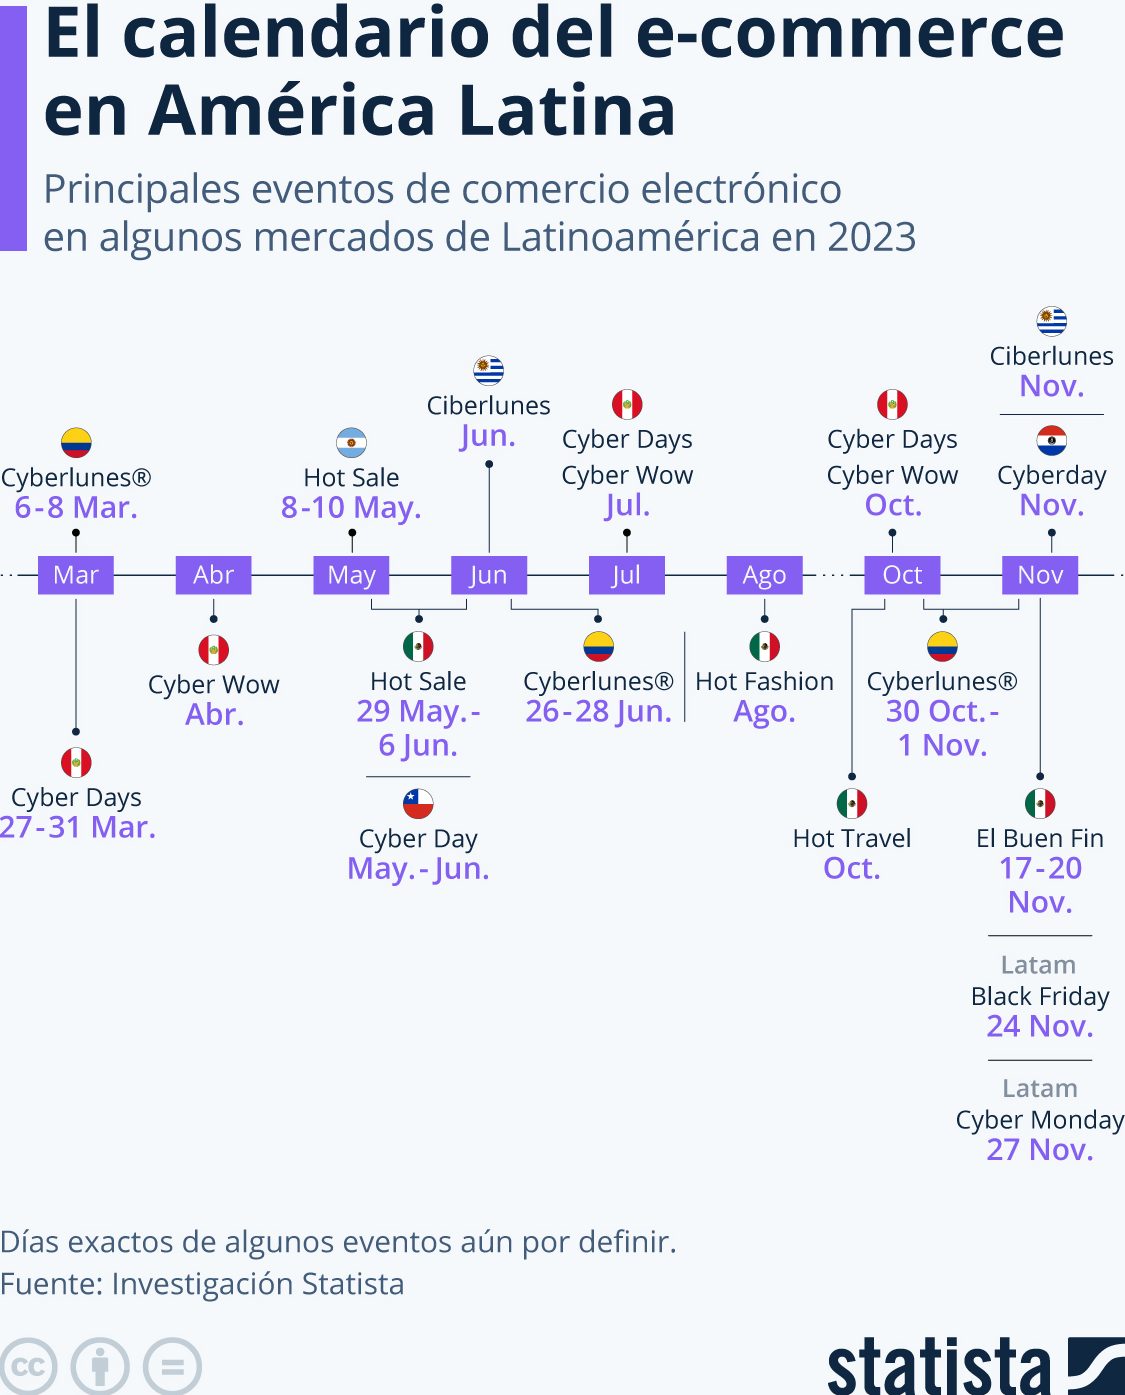 Latinoamérica comercio electrónico 2023